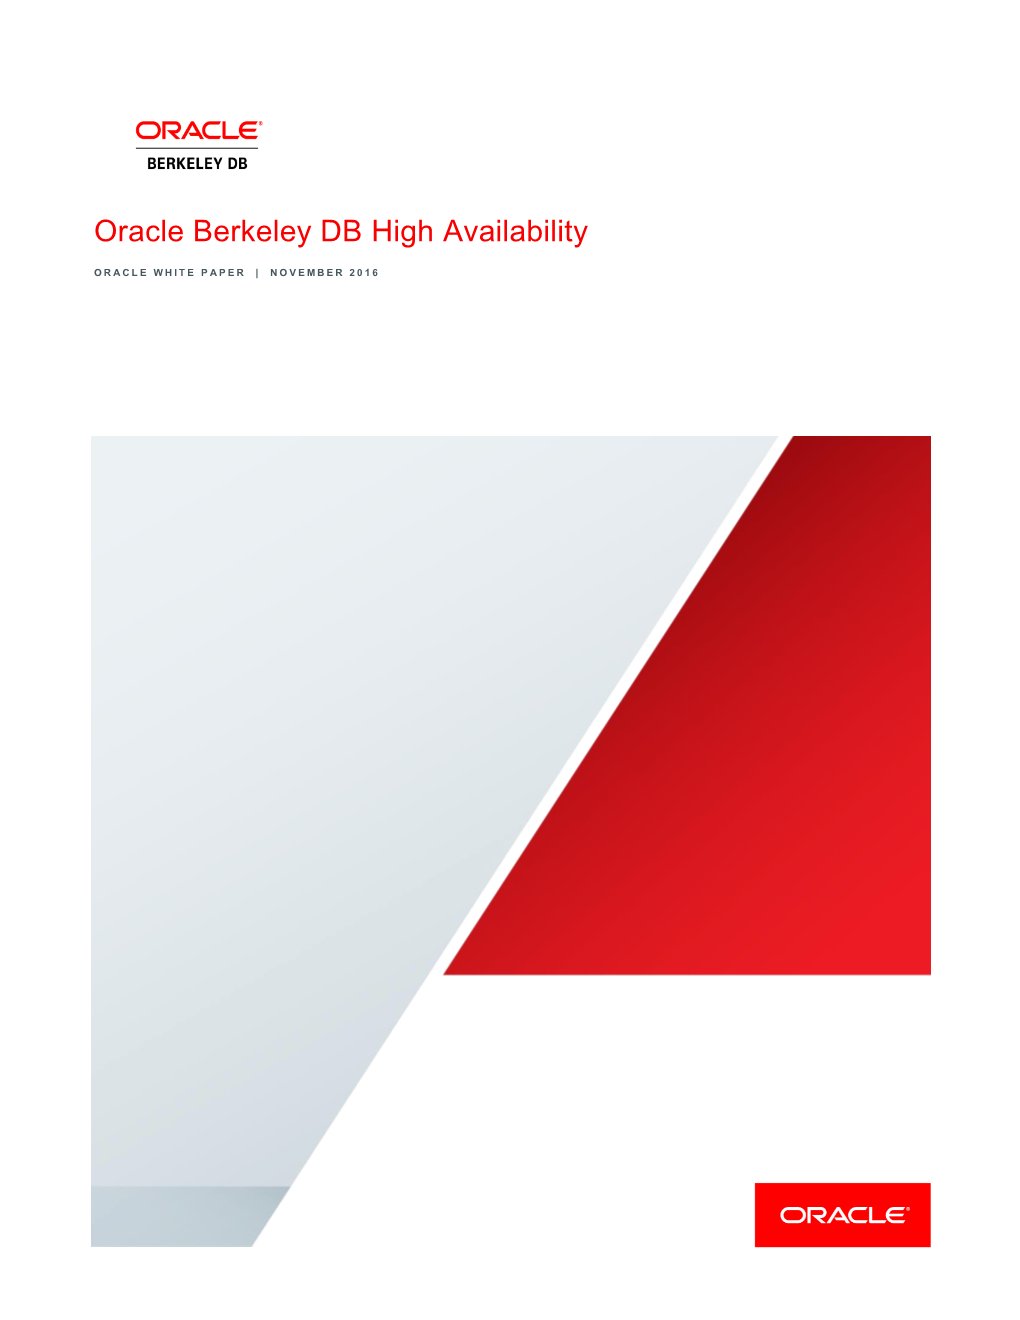 Berkeley DB Java Edition High Availability (HA)